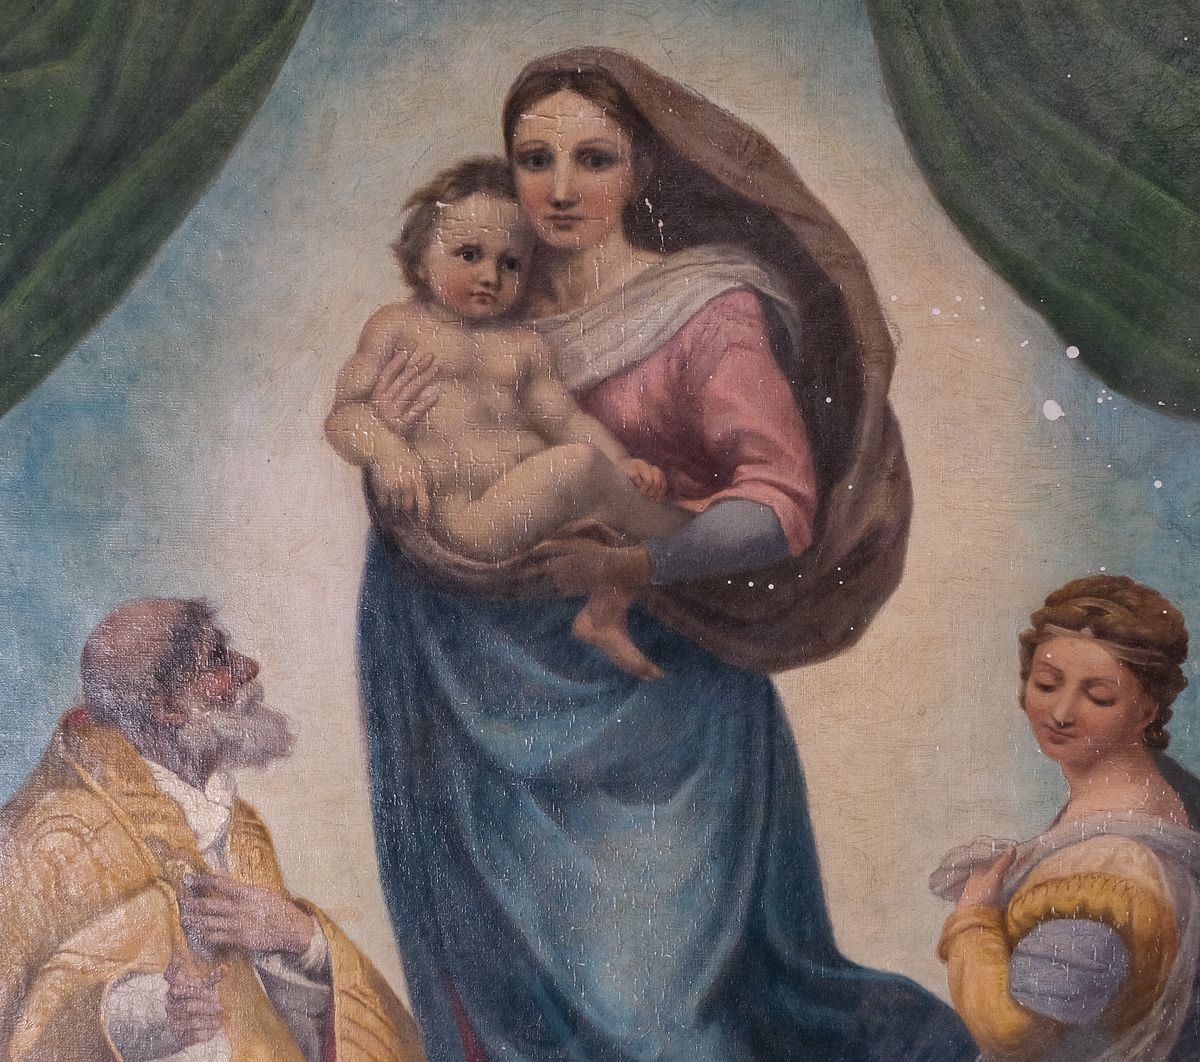 Artwork by Raffaello Sanzio, a copy after the “Sistine Madonna” of Raphael (Raffaello Sanzio) (Italian, Made of oil on canvas painting